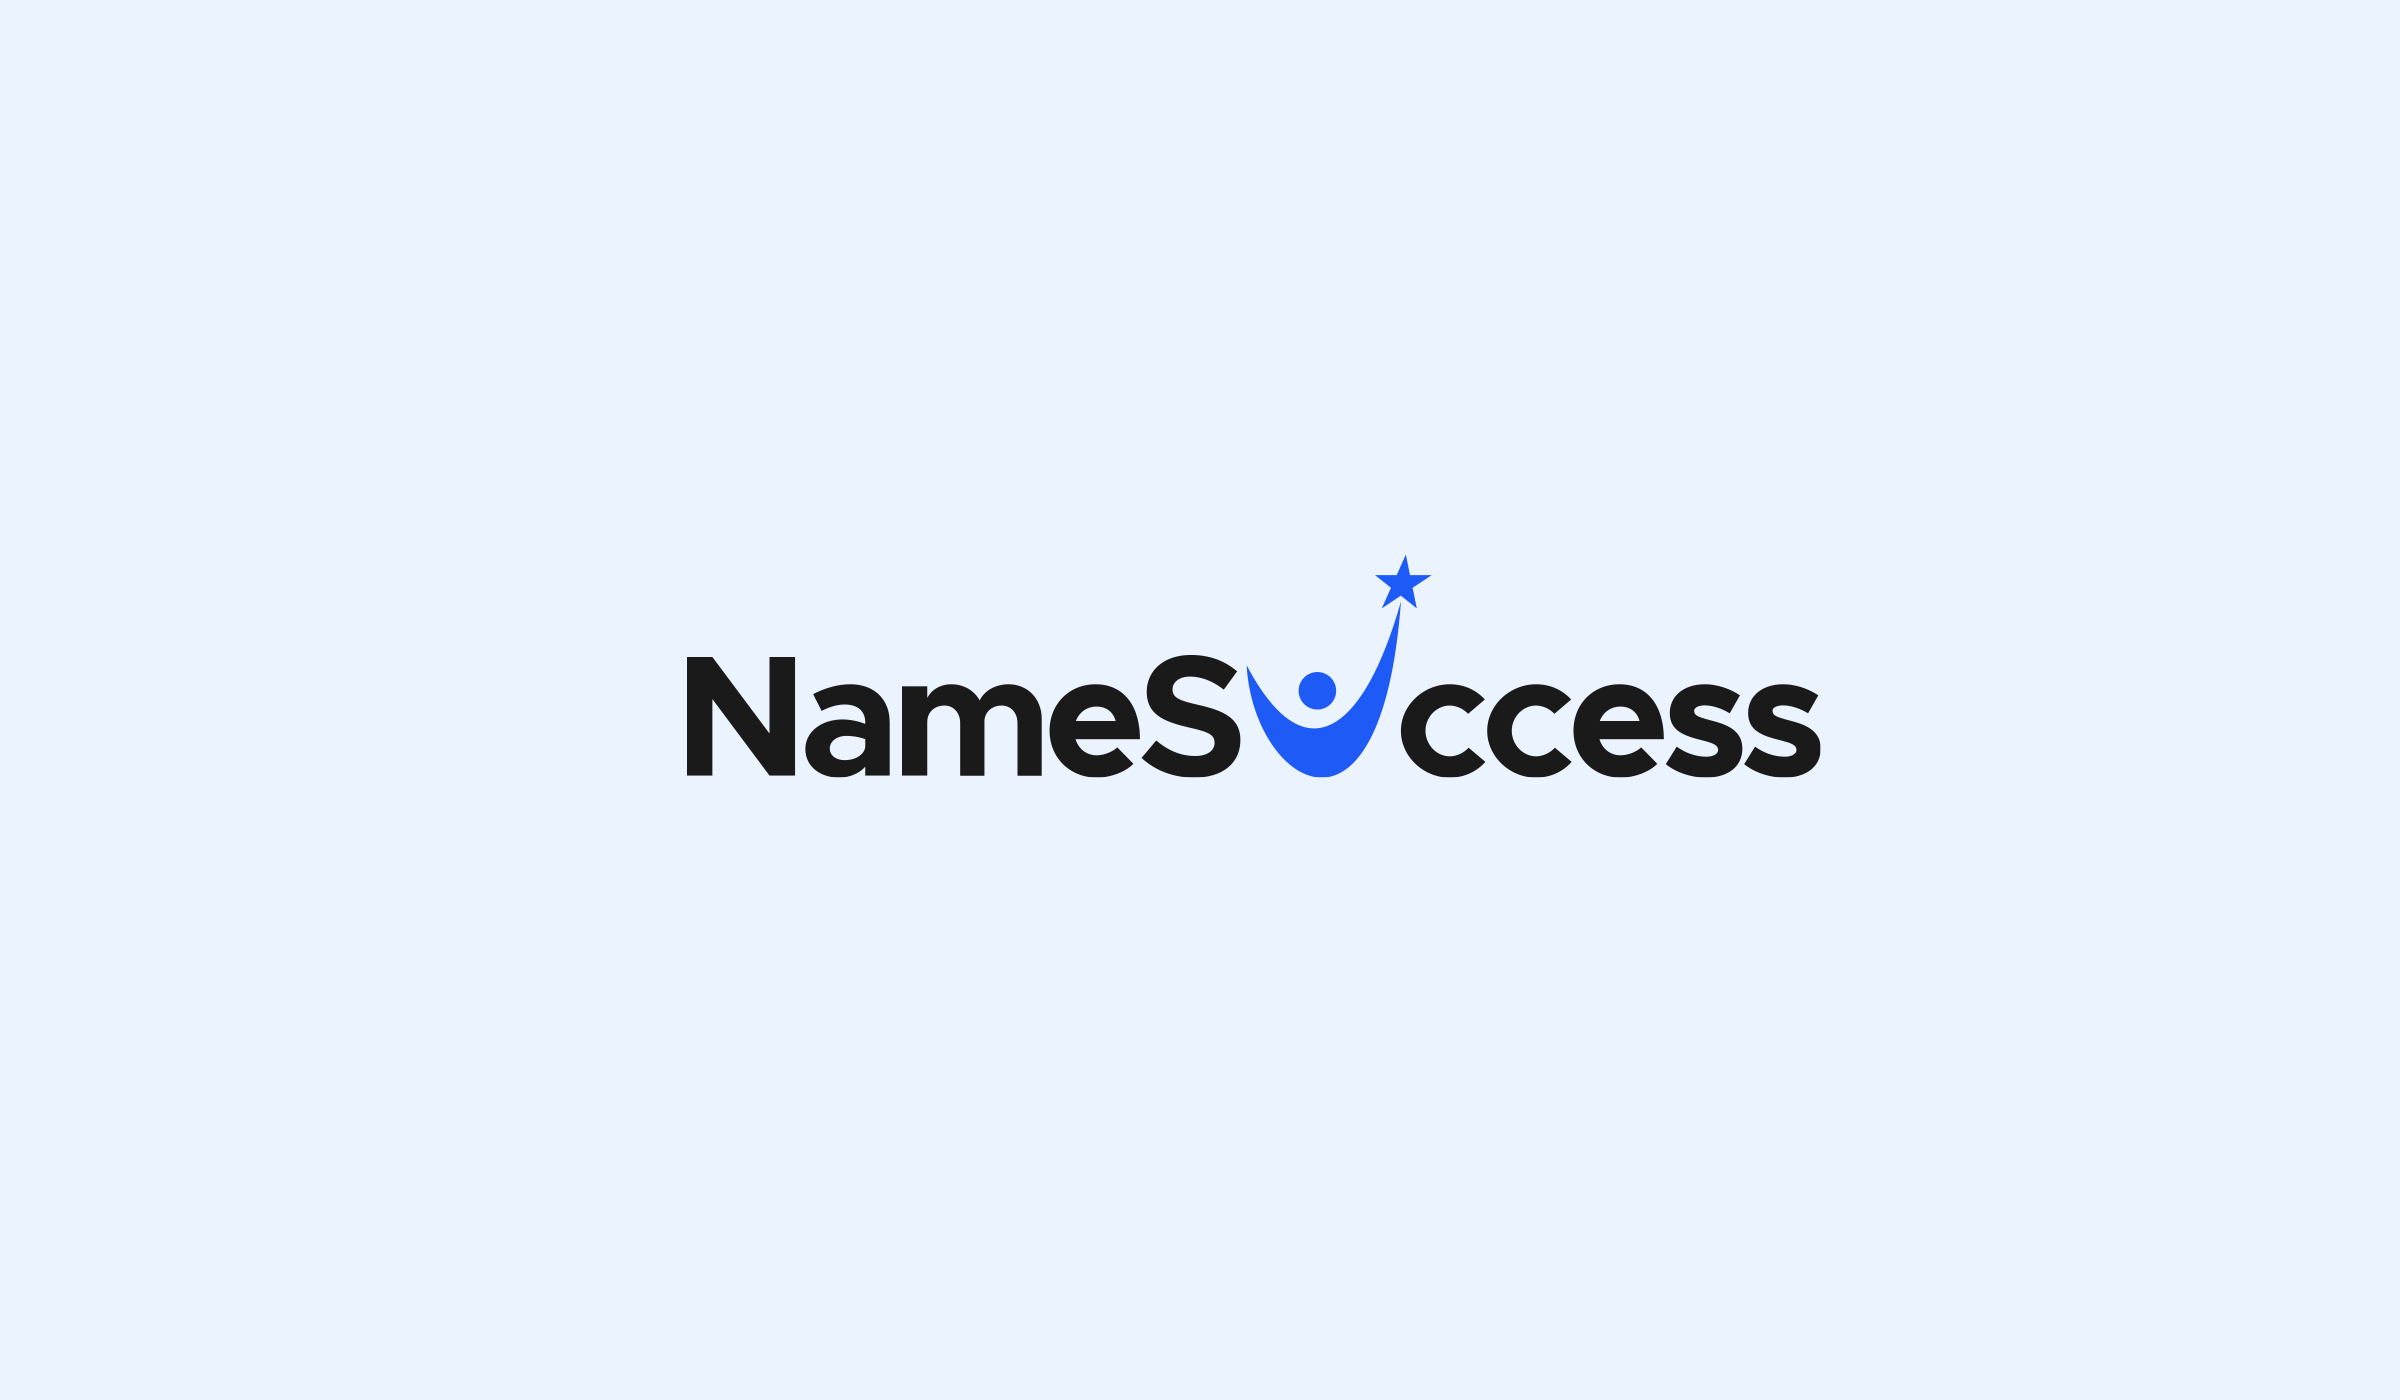 namesuccess.com